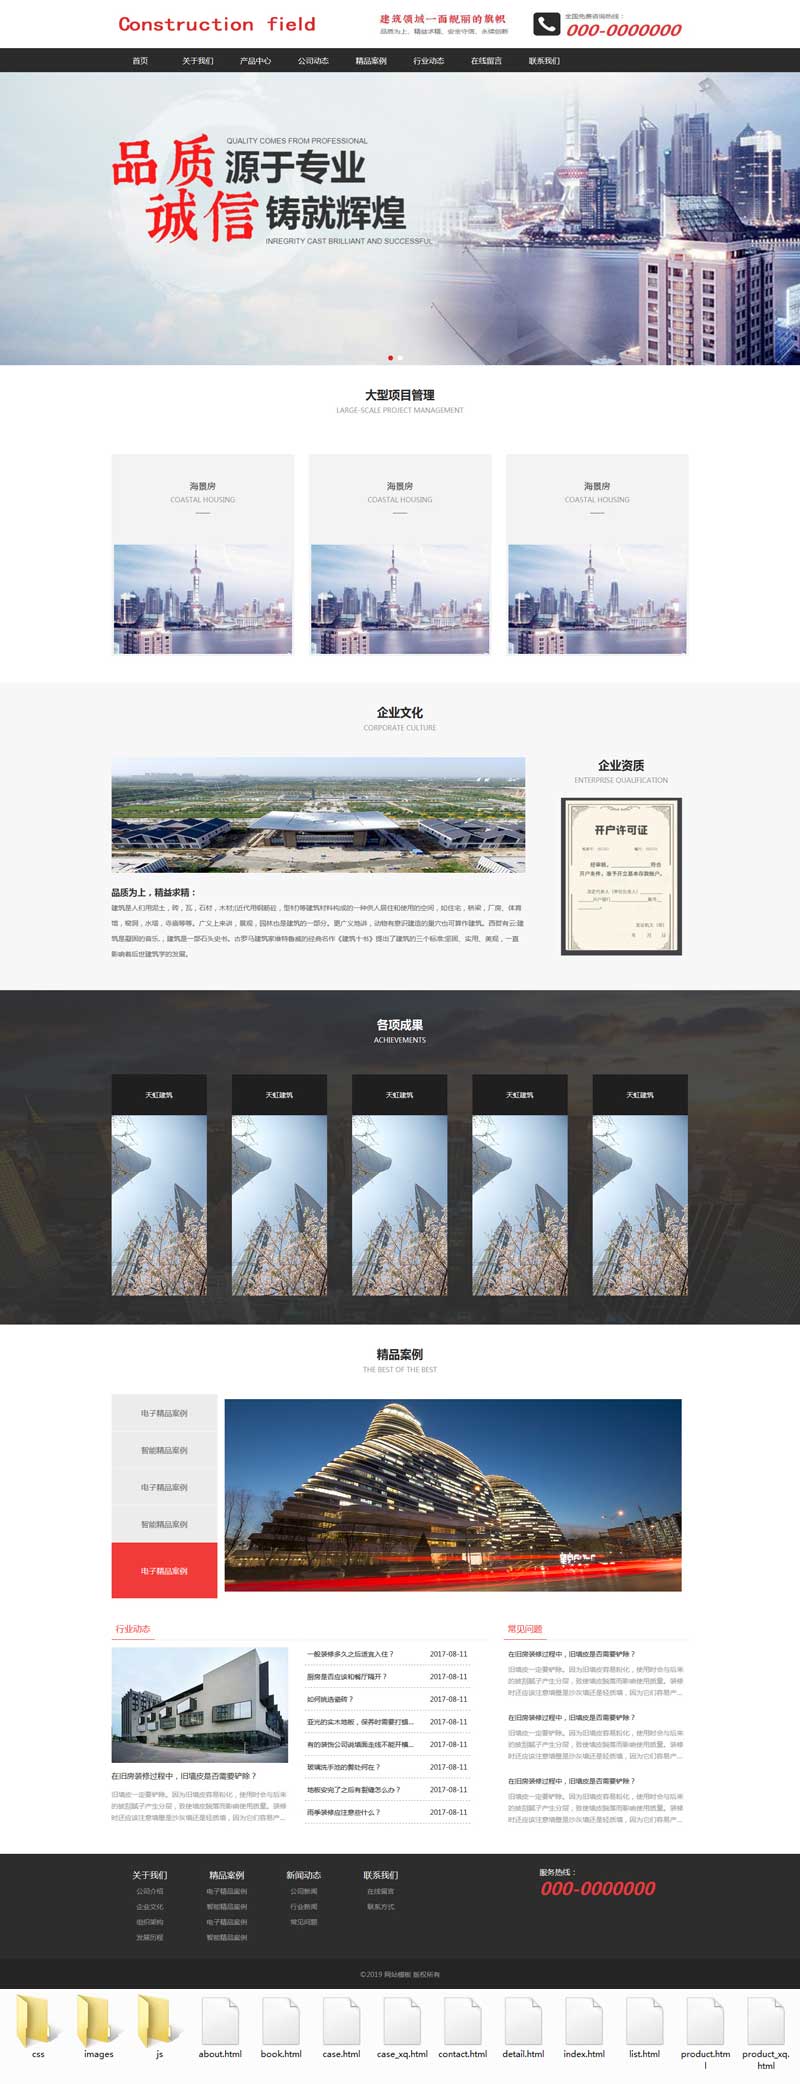 大气的酒店建筑行业网站模板